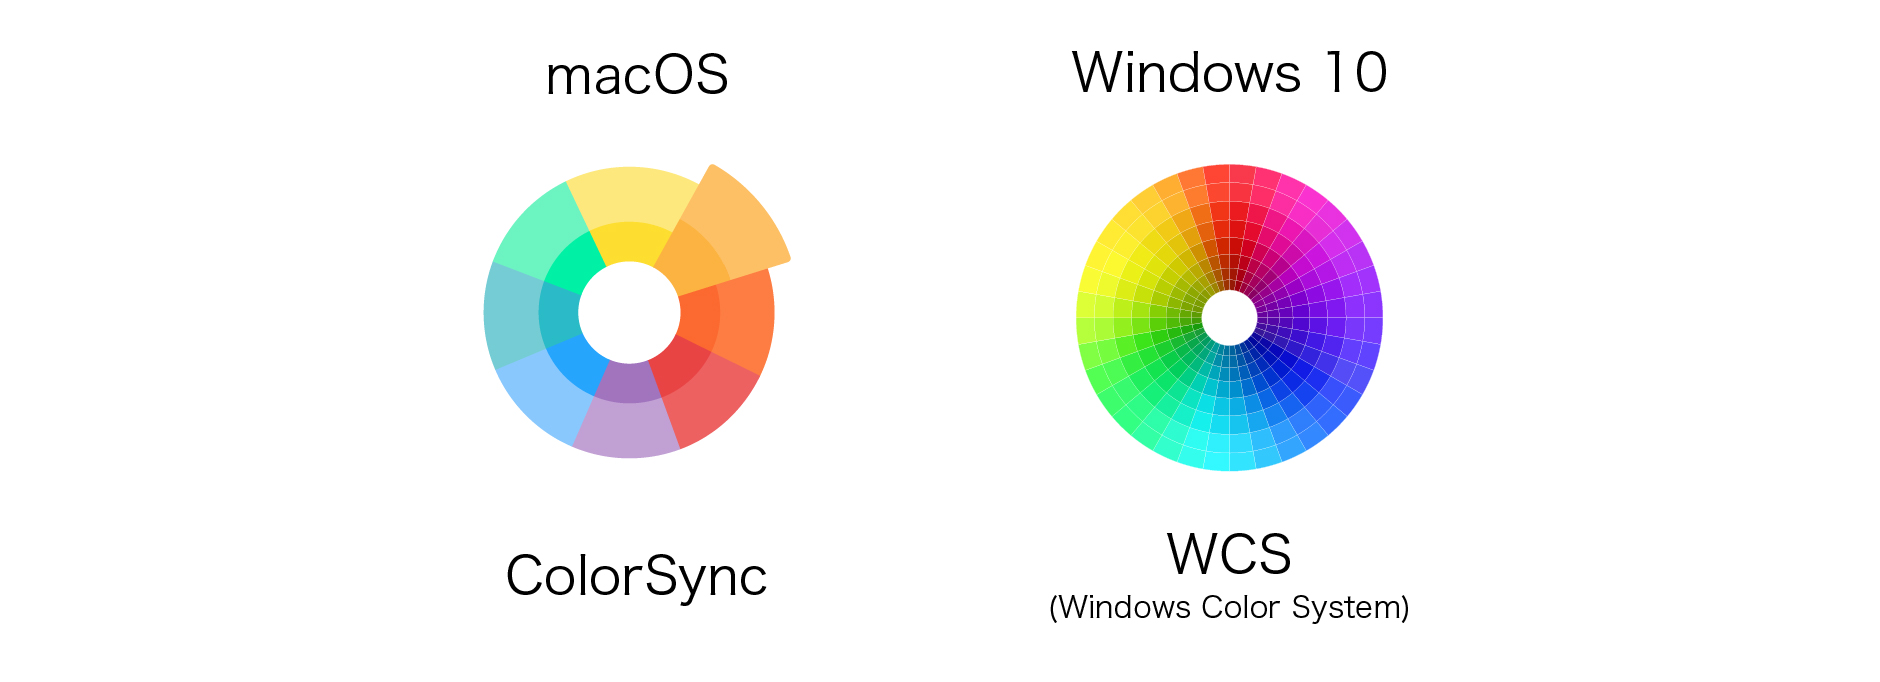 MacとWindowsの環境でのカラーワークフロー